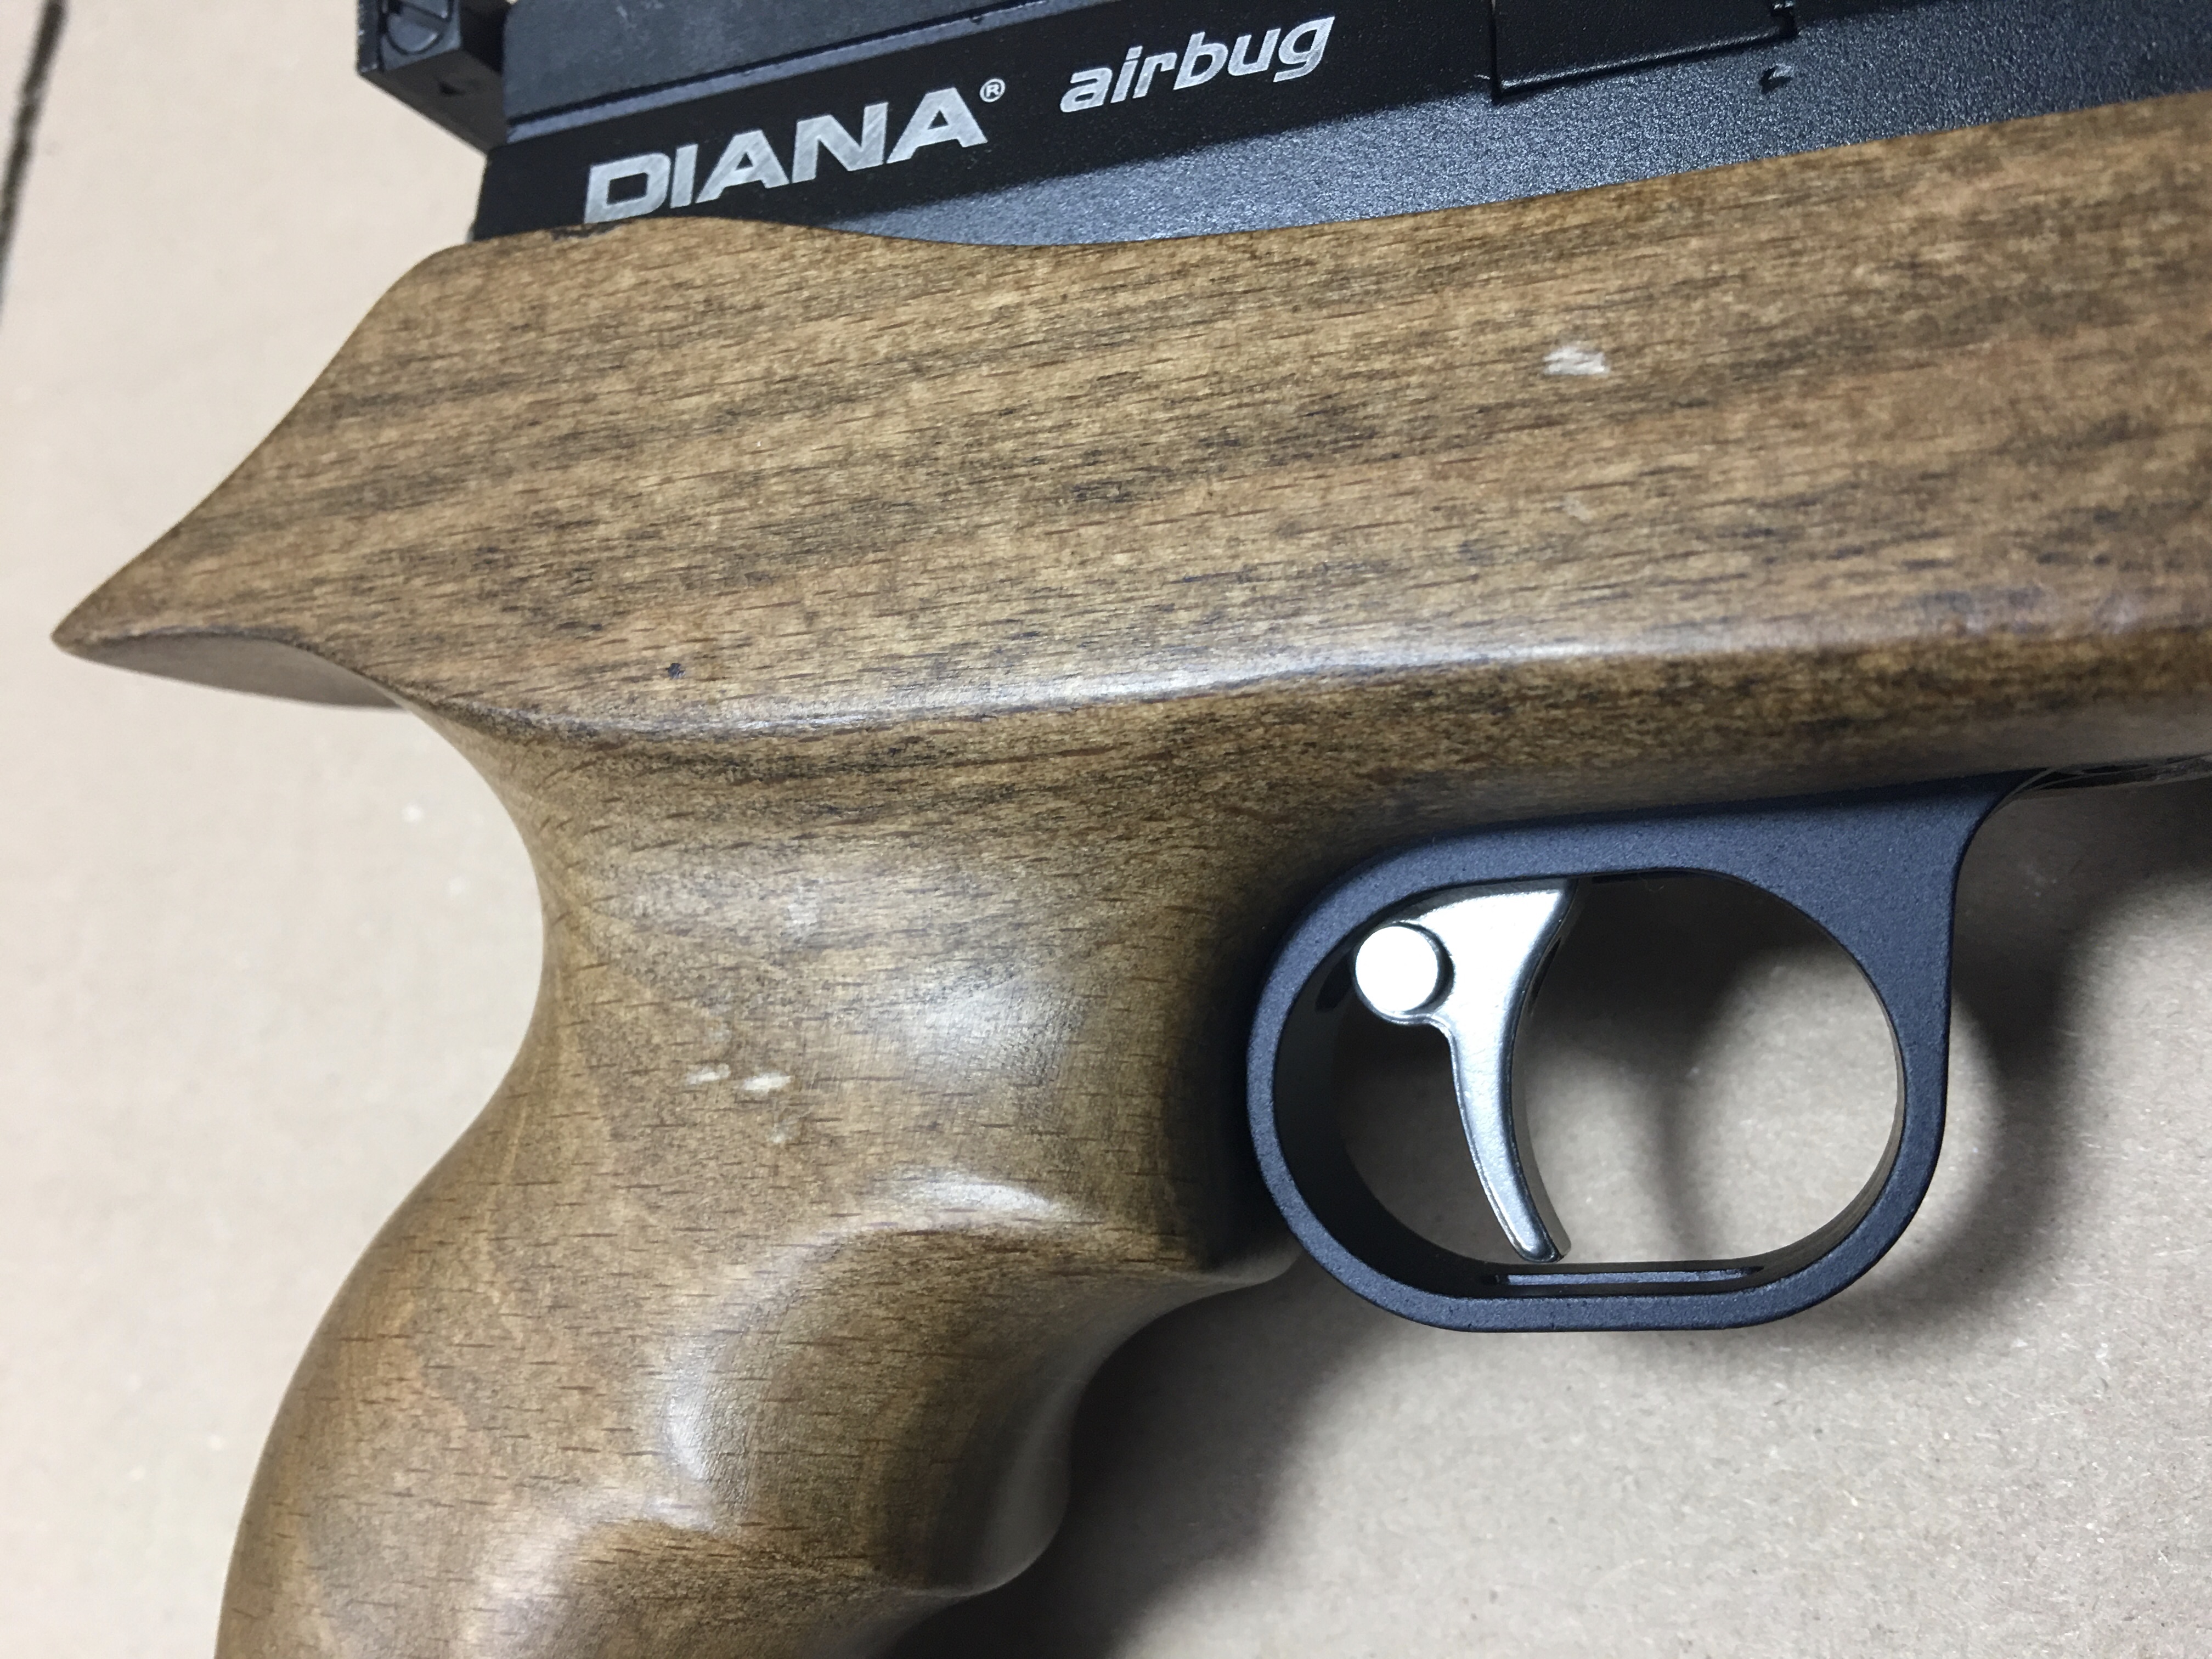 CO2 Luftpistole Diana airbug, F,  4,5mm, reduziert wegen mit kleinen Fehlern im Holz